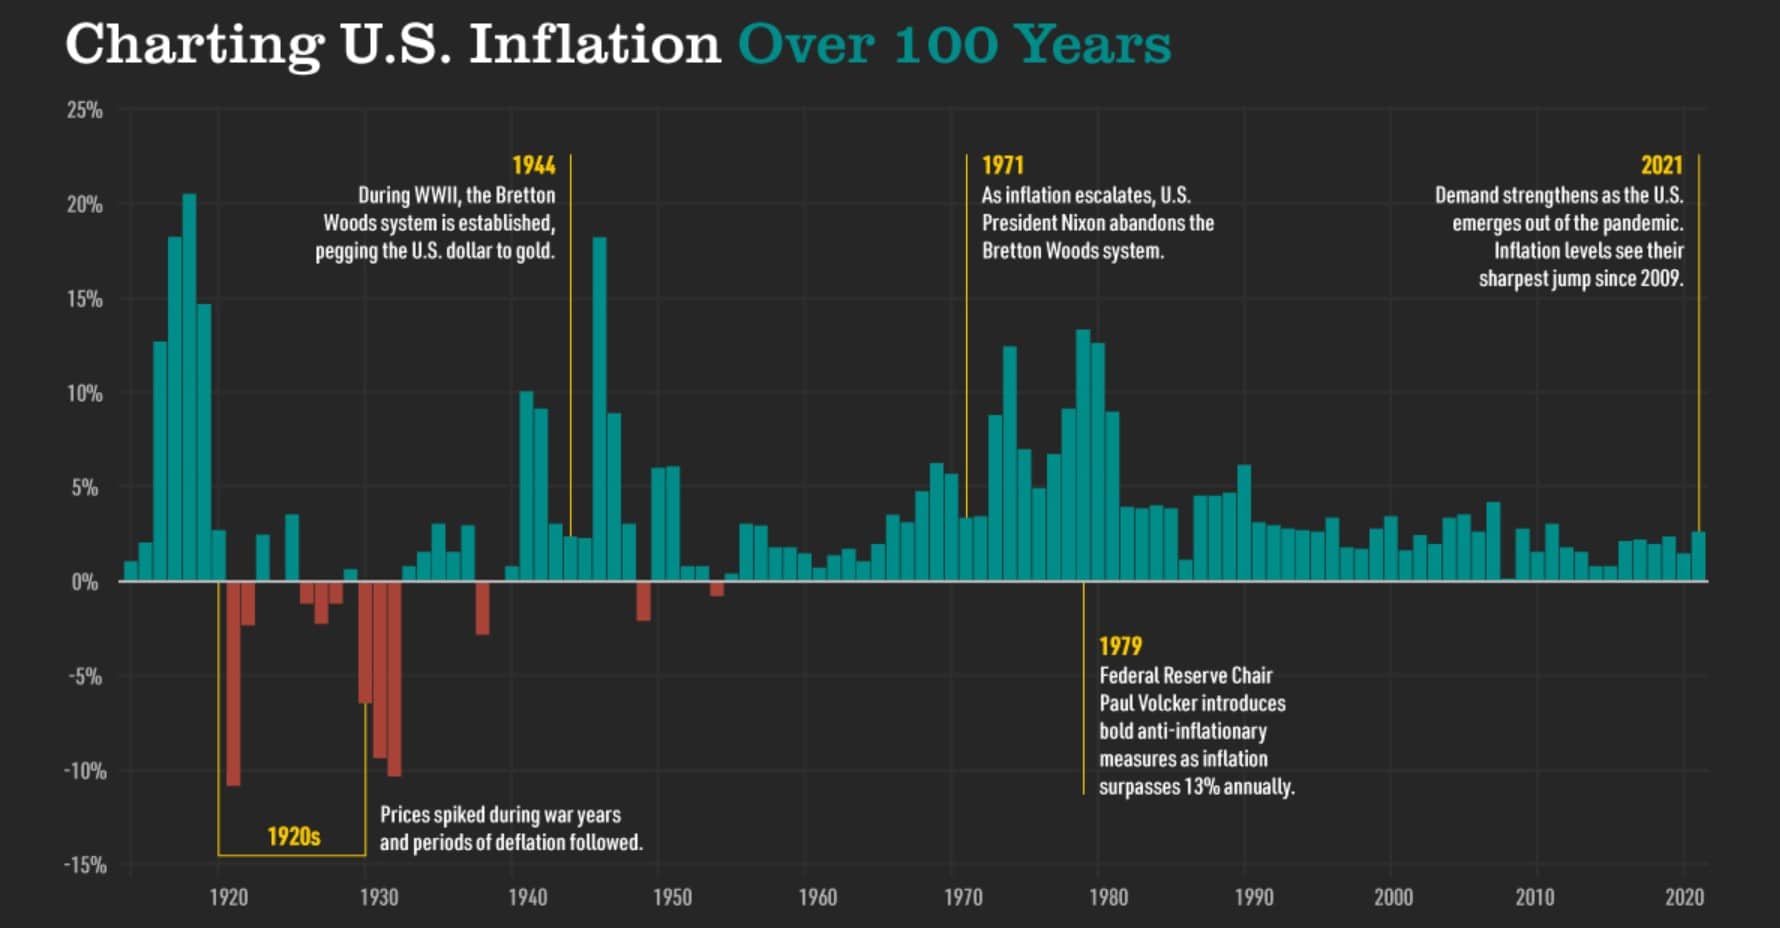 שיעור האינפלציה בארה"ב